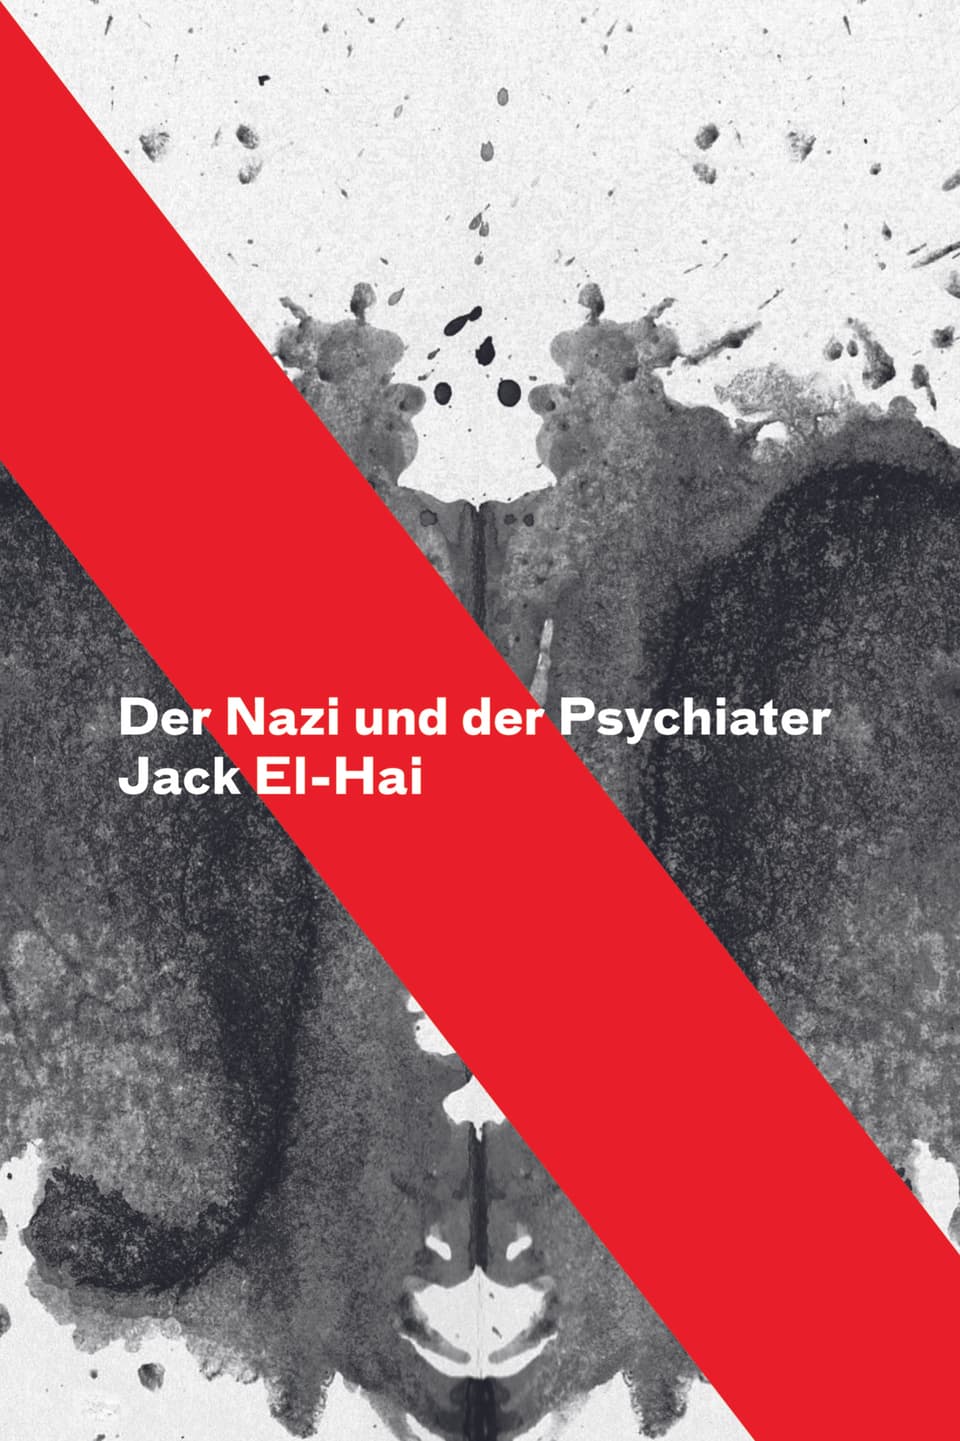 Buchcover von "Der Nazi und der Psychiater" von Jack El-Hai